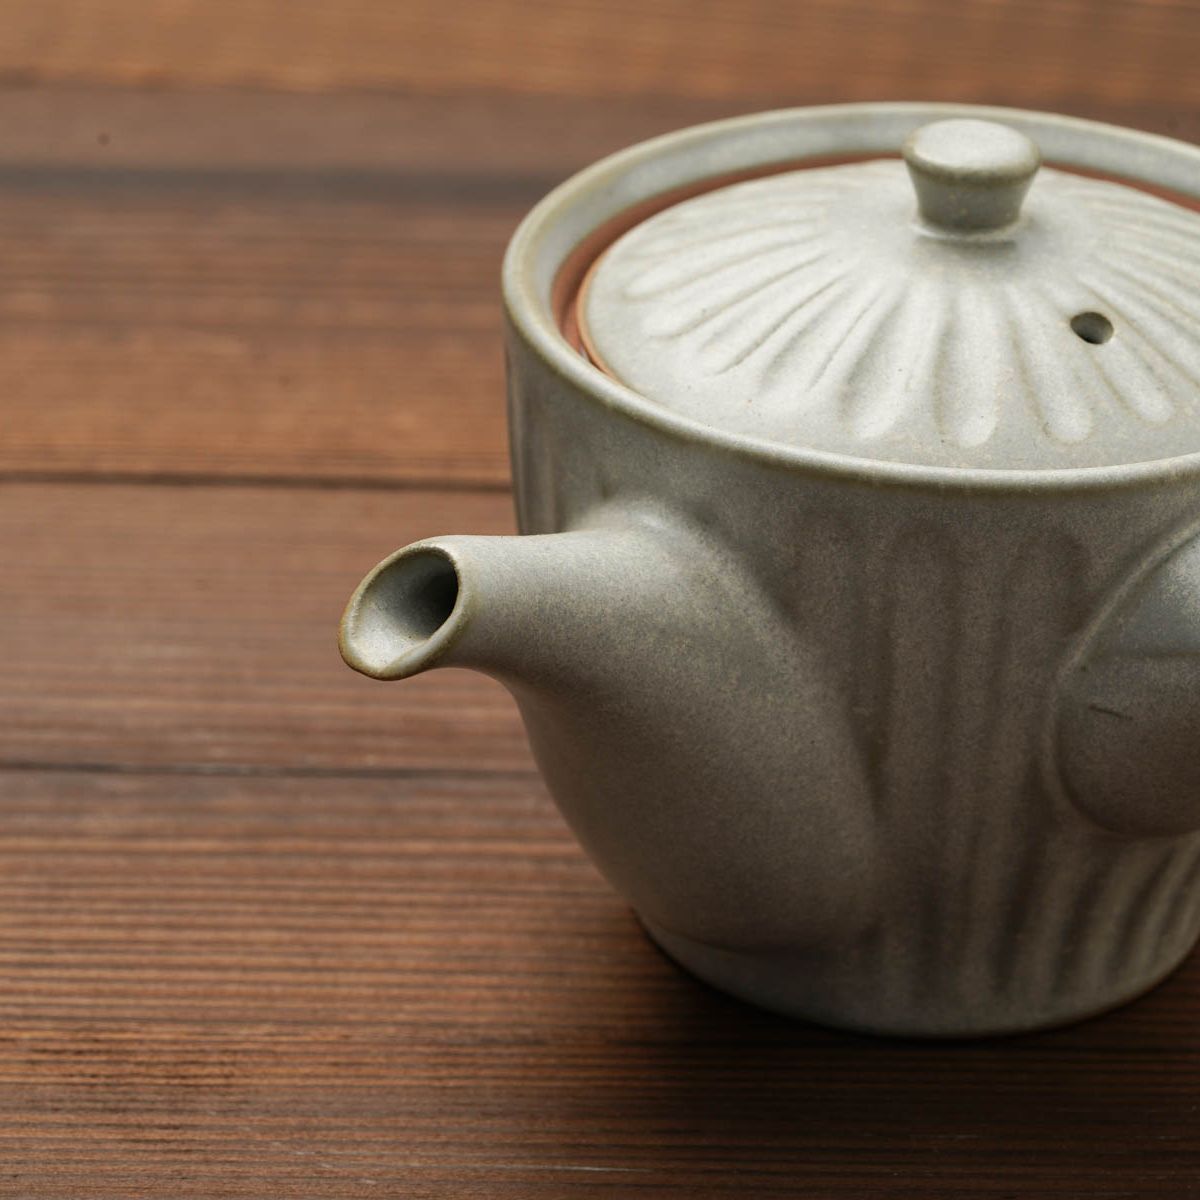 急須(茶こし付き） 粉引グレー 菊型 380ml おしゃれ 日本製 和食器 美濃焼 陶器 ティーポット 茶器 お茶 | ナチュラル和洋食器 うつわやさん